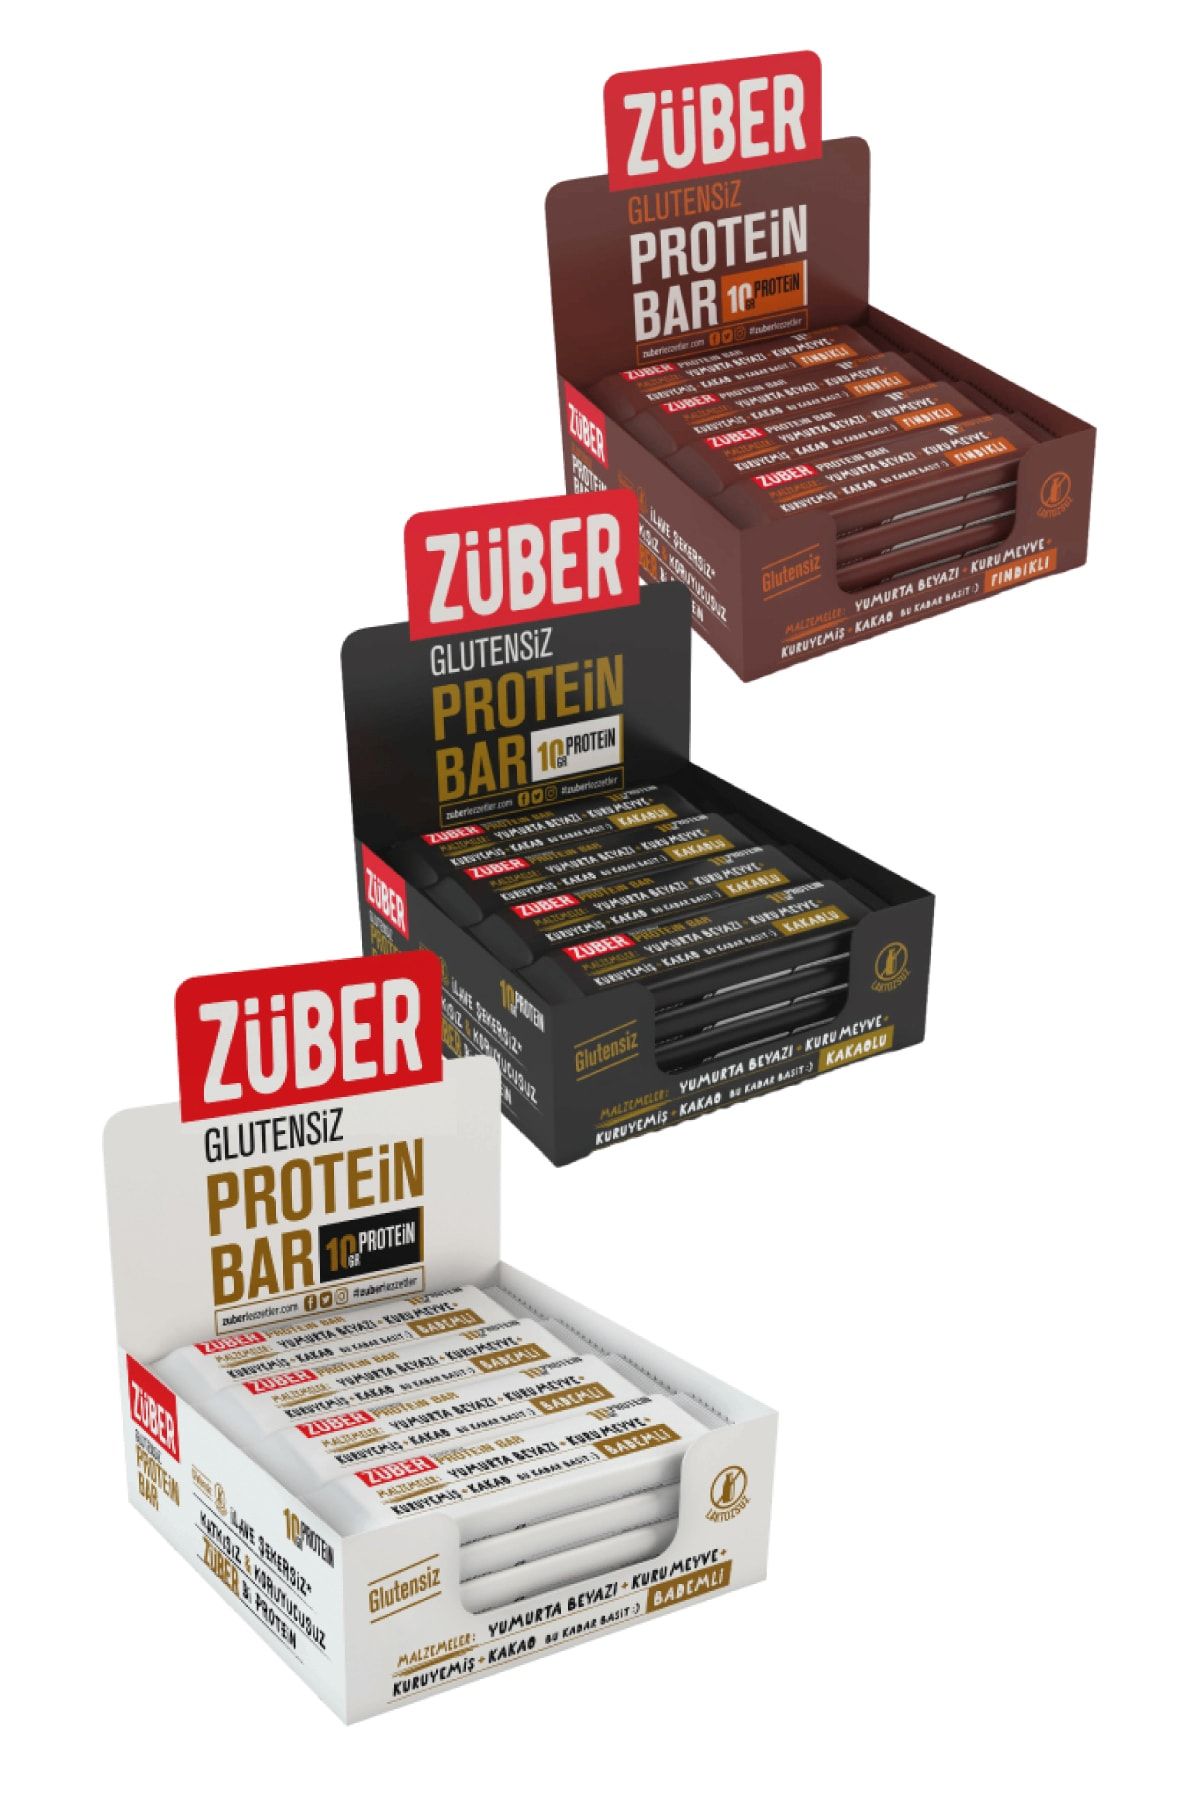 Züber Bademli Kakaolu Fındıklı Glutensiz Doğal Lifli Protein Bar X 3 Avantaj Paket